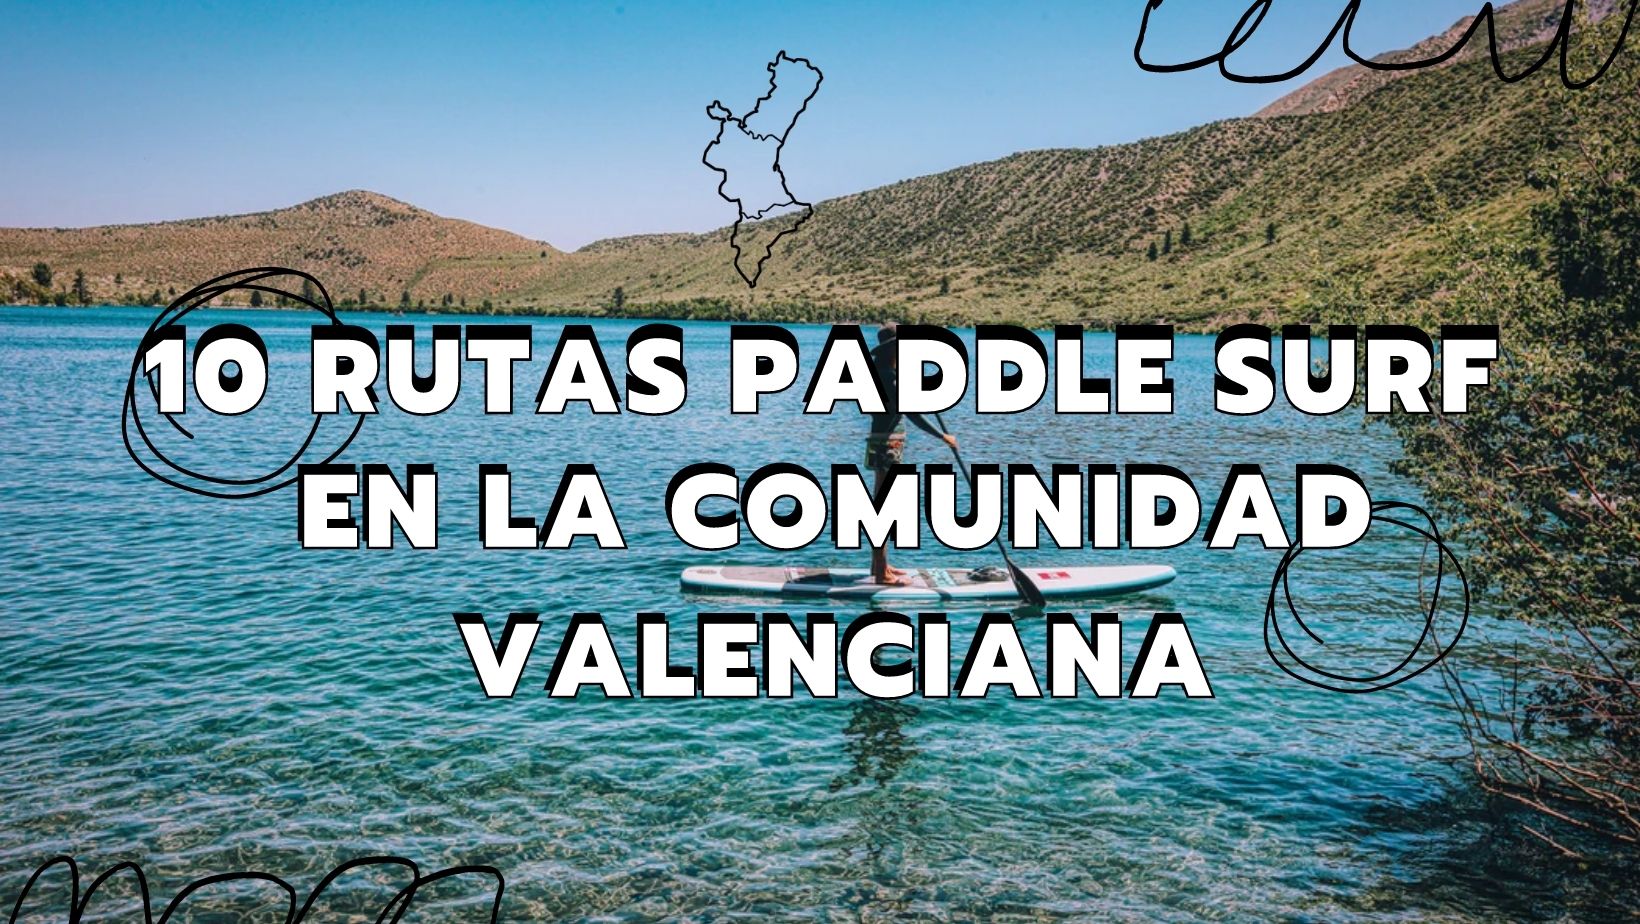 10 mejores rutas paddle surf comunidad valenciana